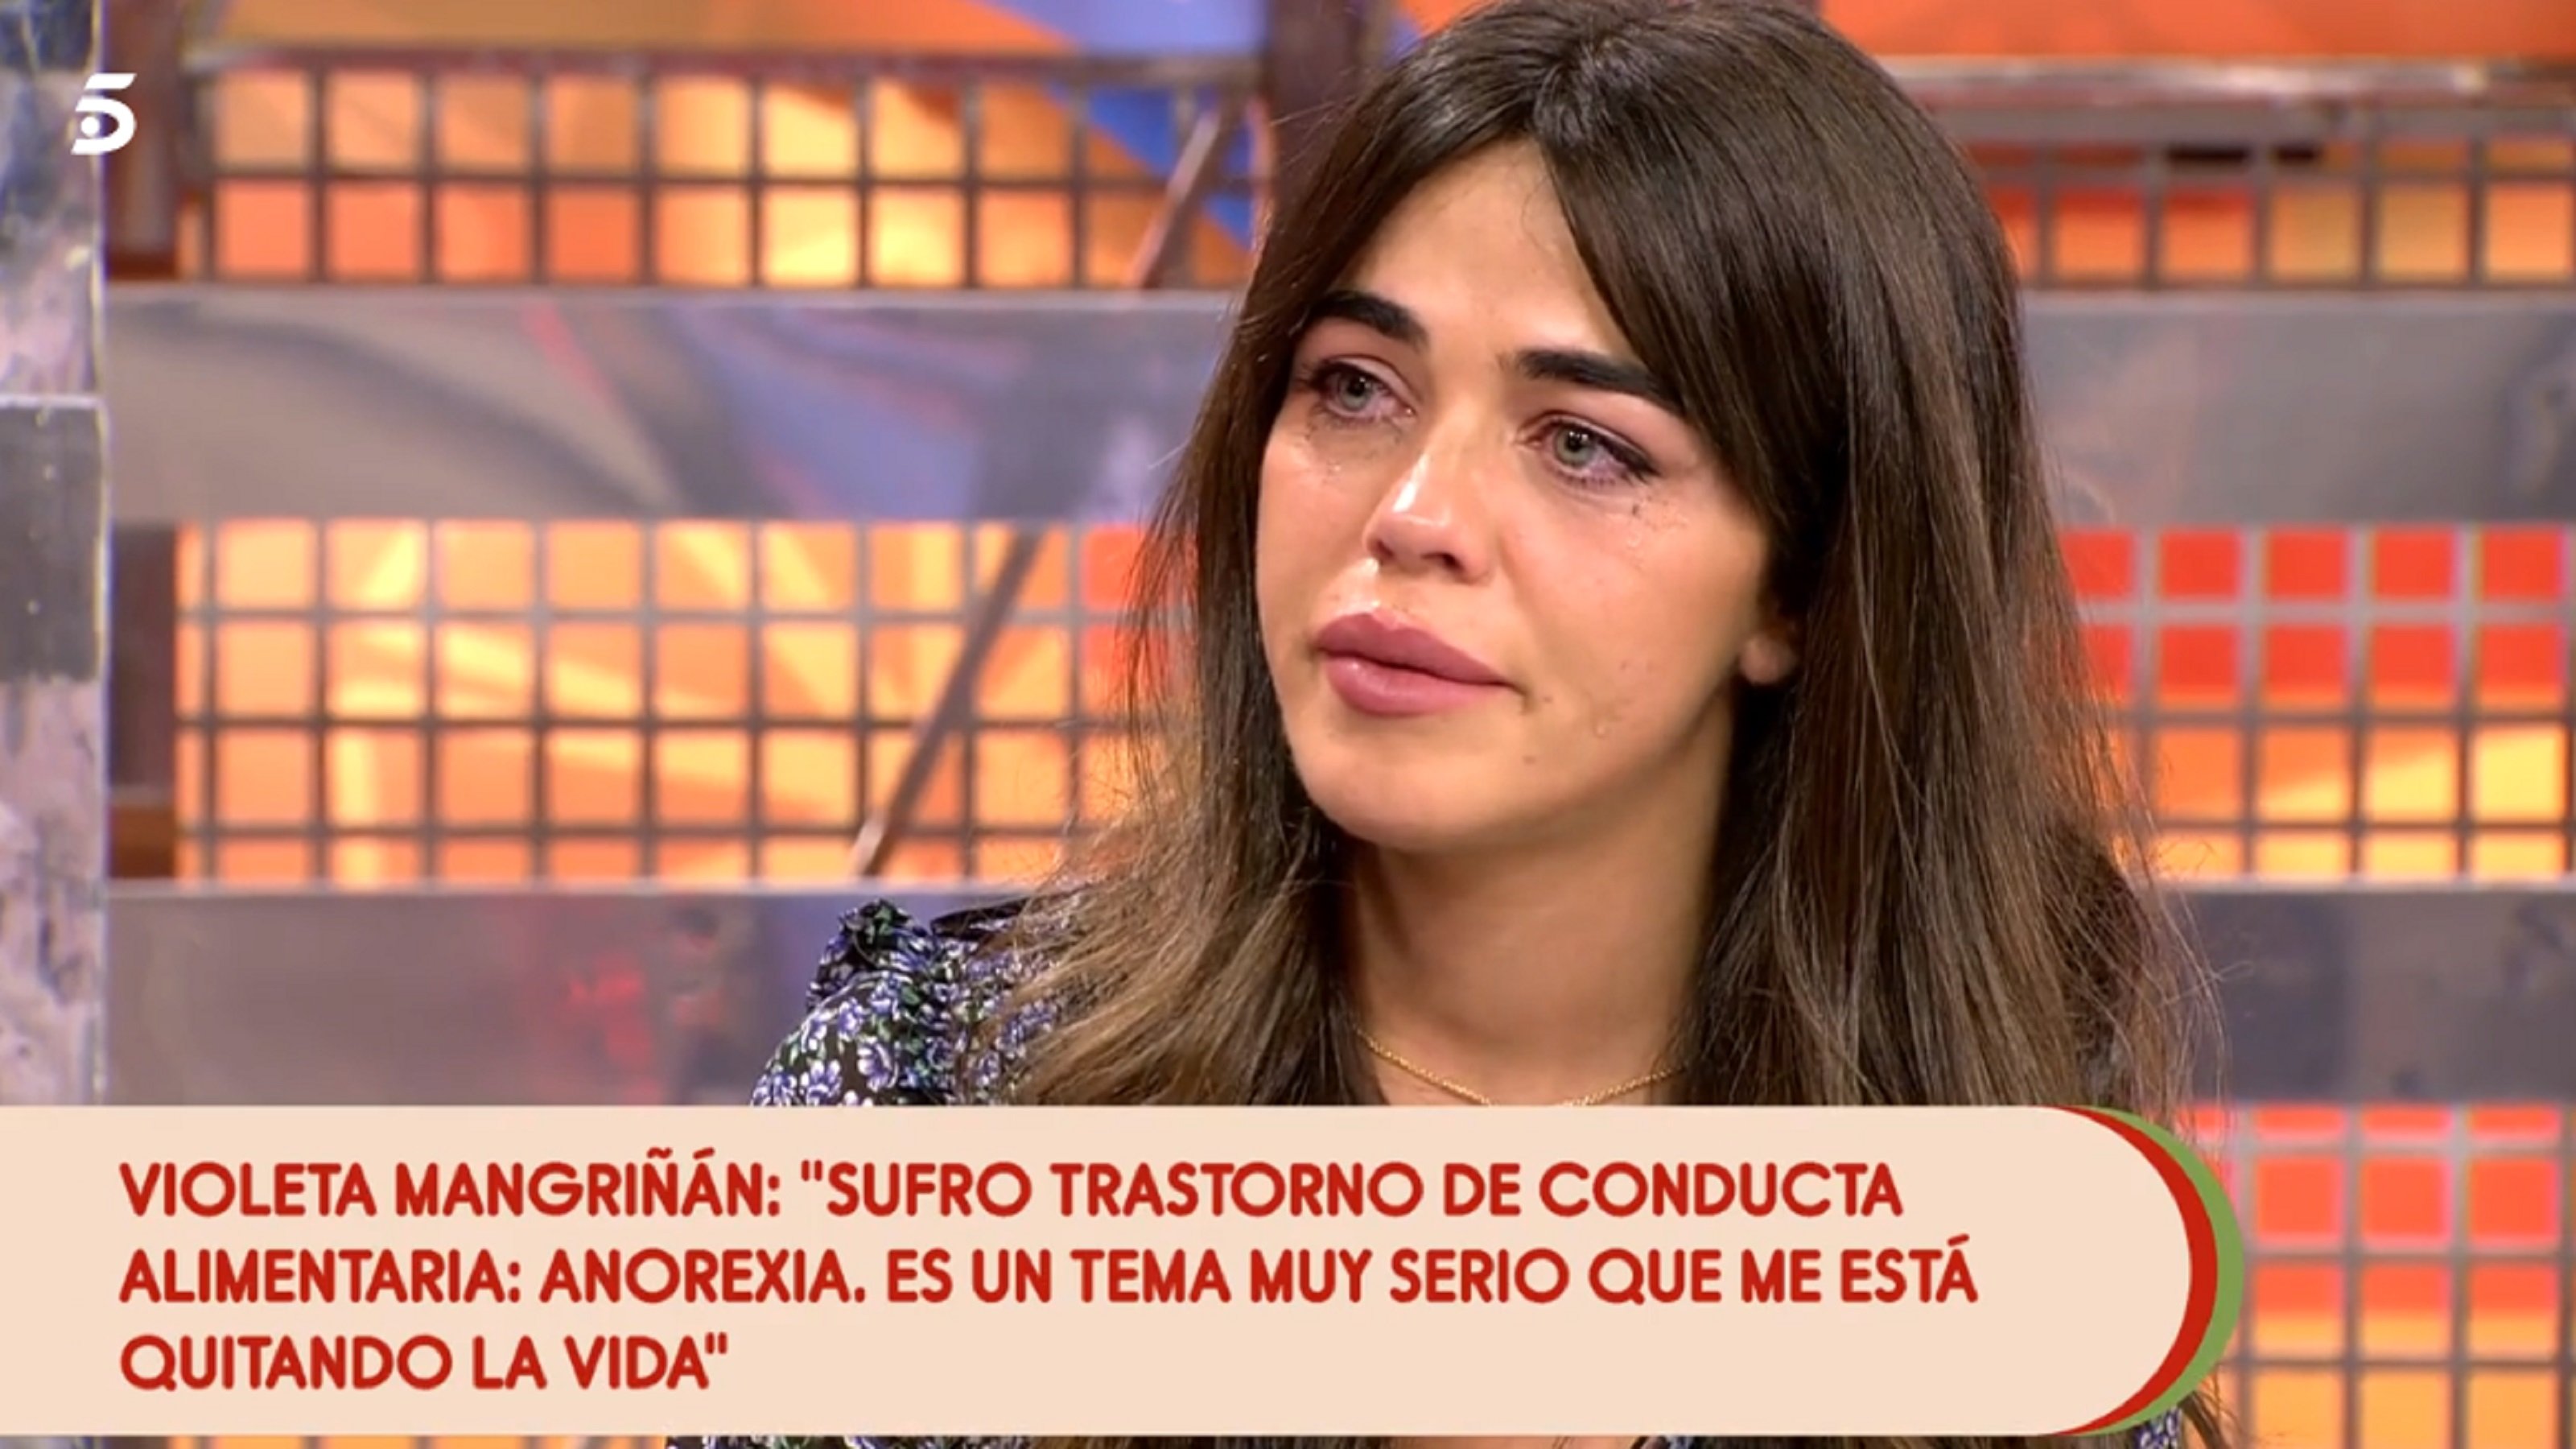 Violeta Magriñán s'enfonsa quan narra el seu infern amb l'anorèxia